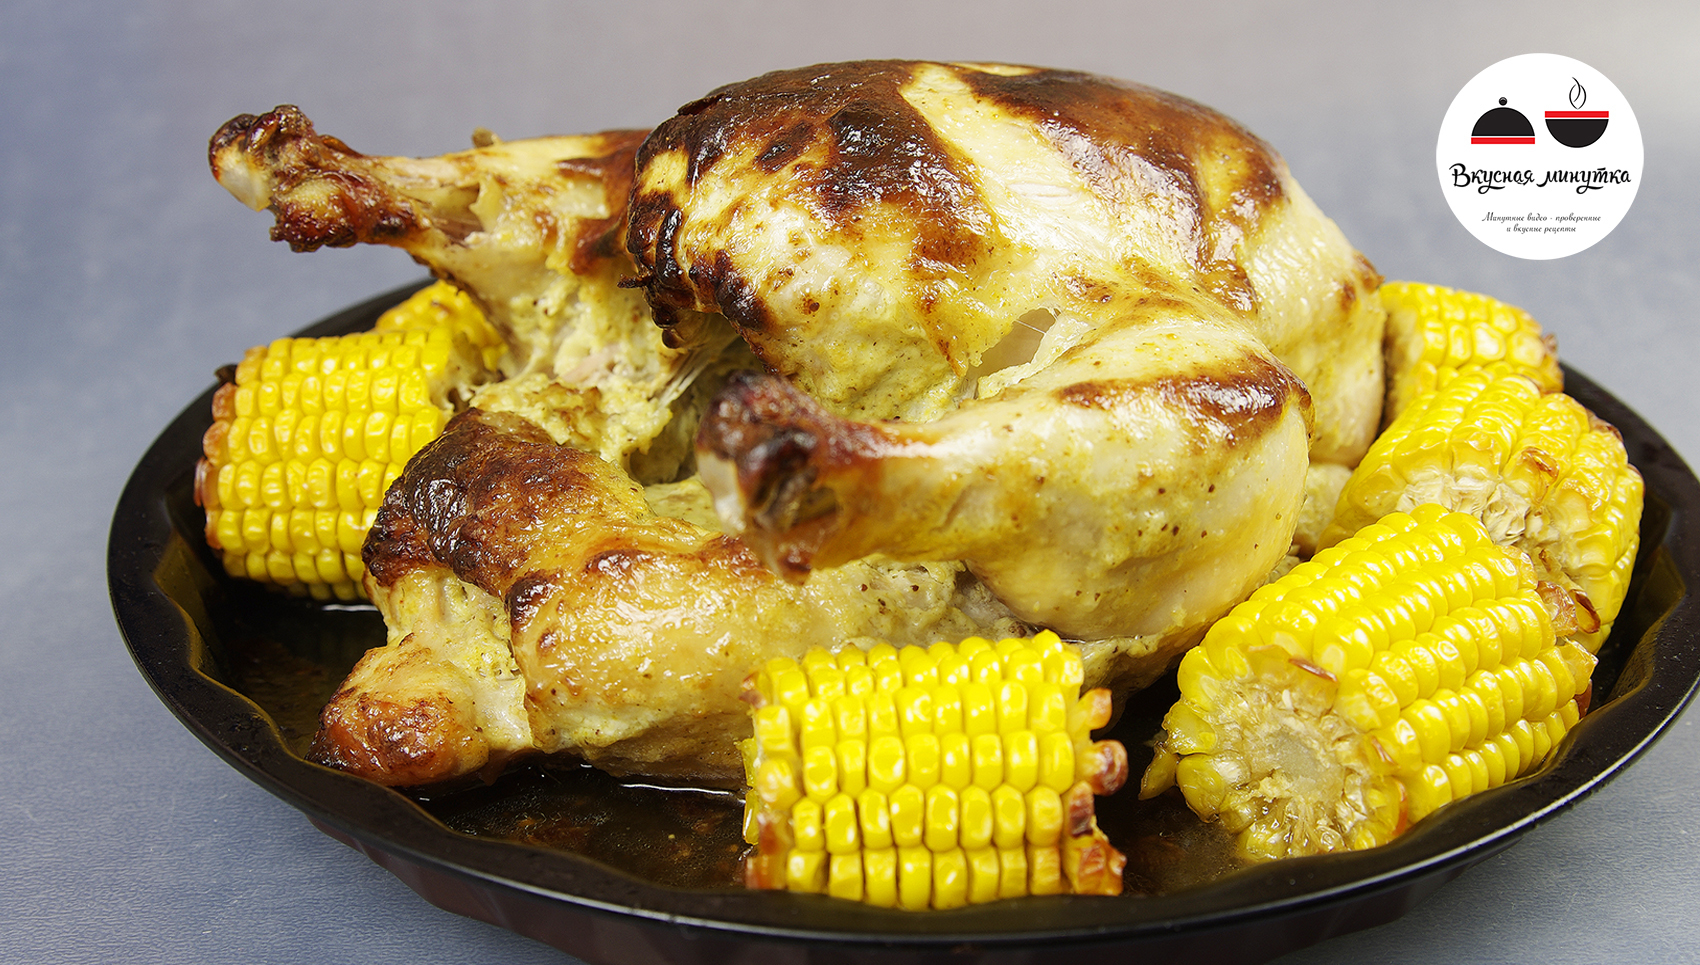 Запеканка с рисом, куриным филе, кукурузой и овощами - рецепт с фотографиями - Patee. Рецепты